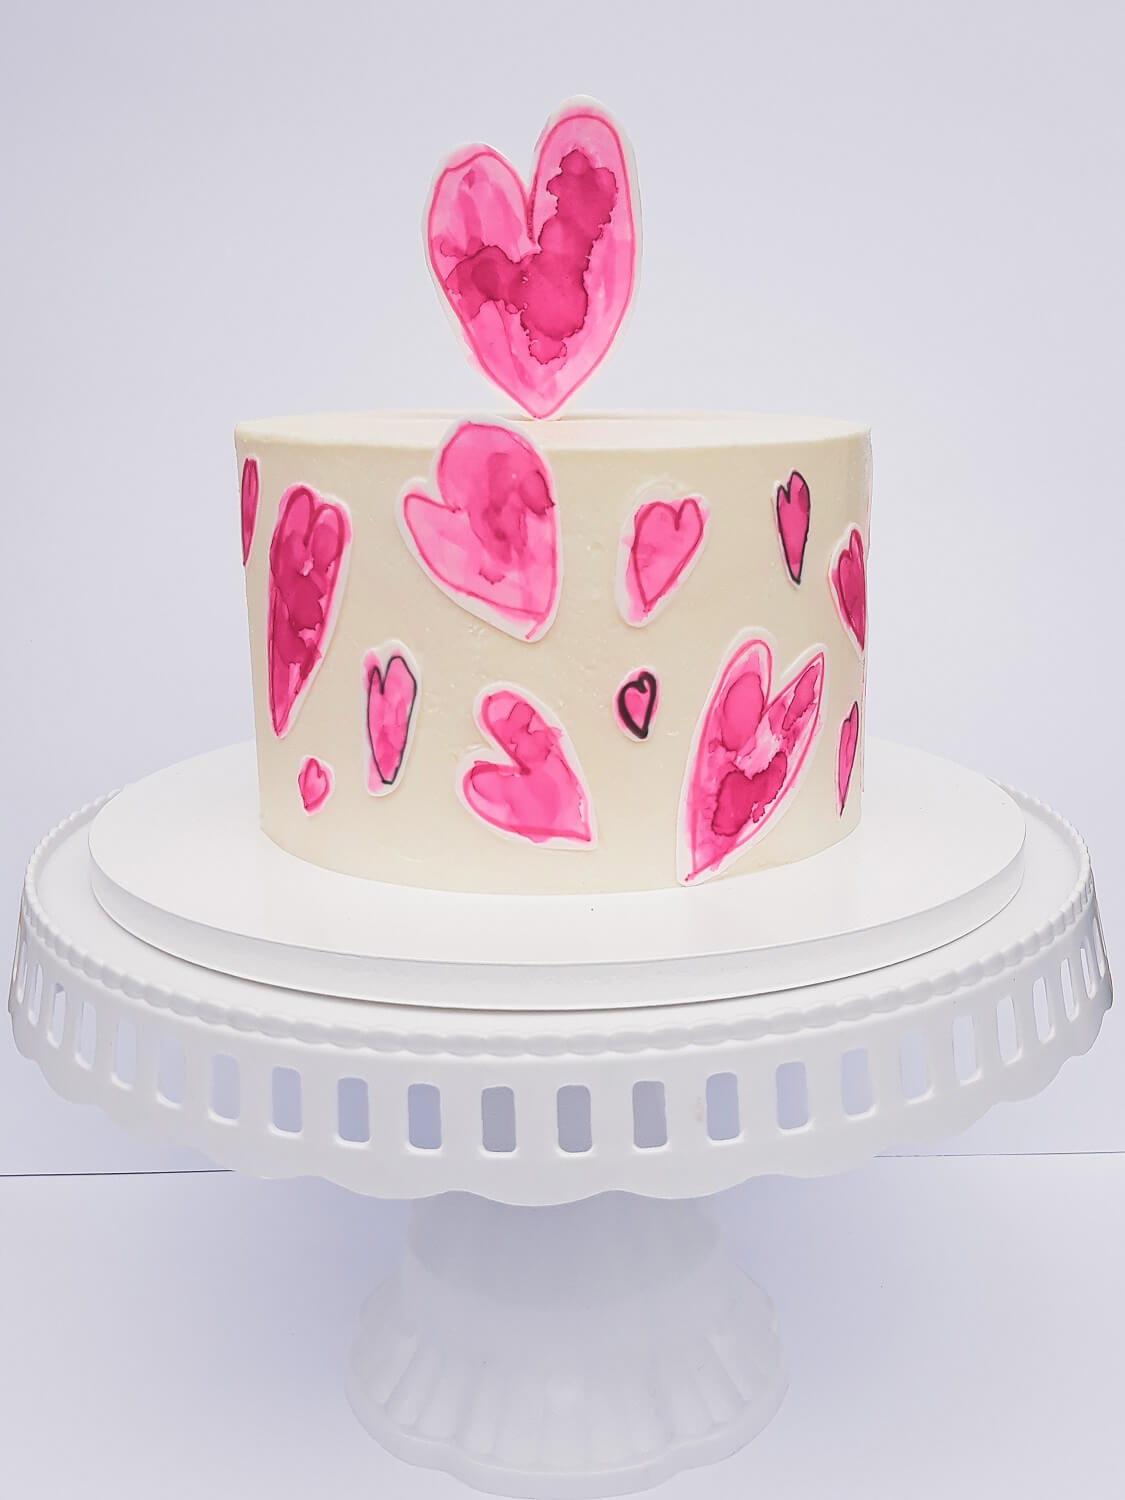 tort z sercami malowanymi na papierze cukrowym na dzień matki, niech twoje dziecko ozdobi tort, pozwól swojemu dziecku ozdobić tort